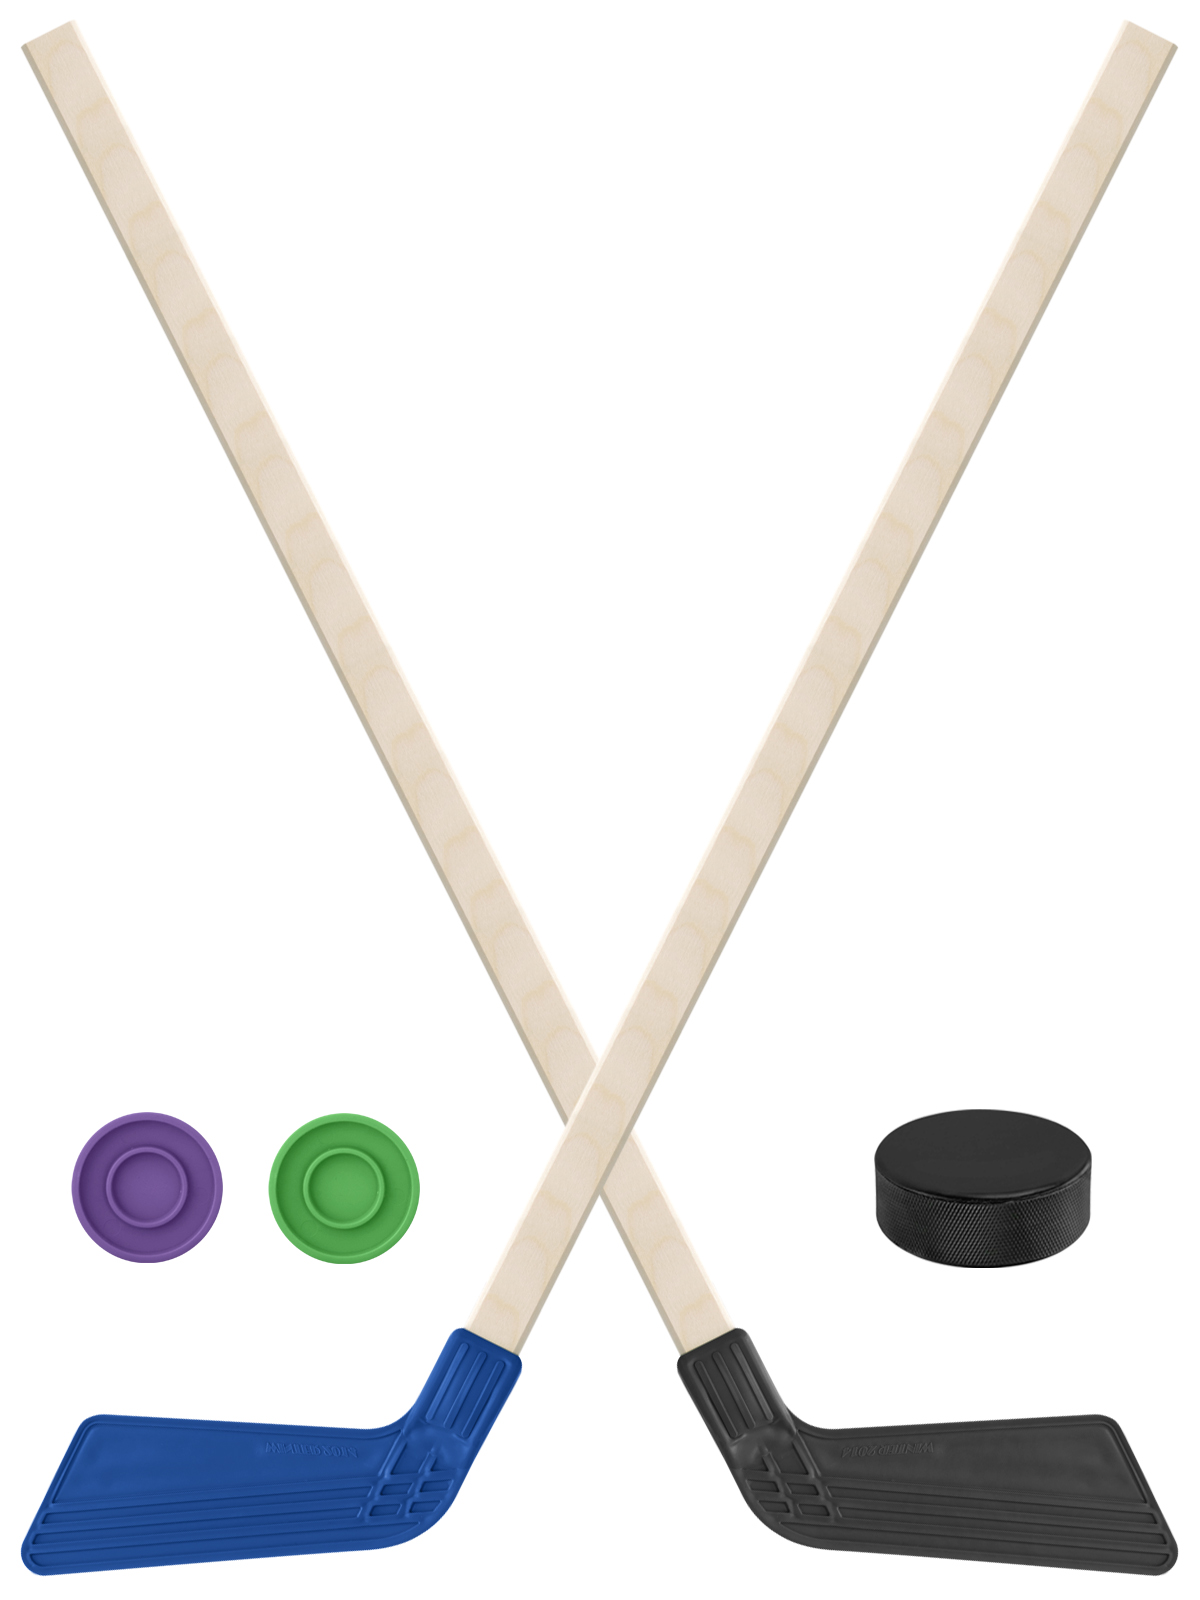 Детский хоккейный набор Задира-плюс Клюшка хоккейная 2шт(син,чёрн)+2шайбы+Шайба 75 мм клюшка флорбольная acito master 35 green 80 round правый 3006 121